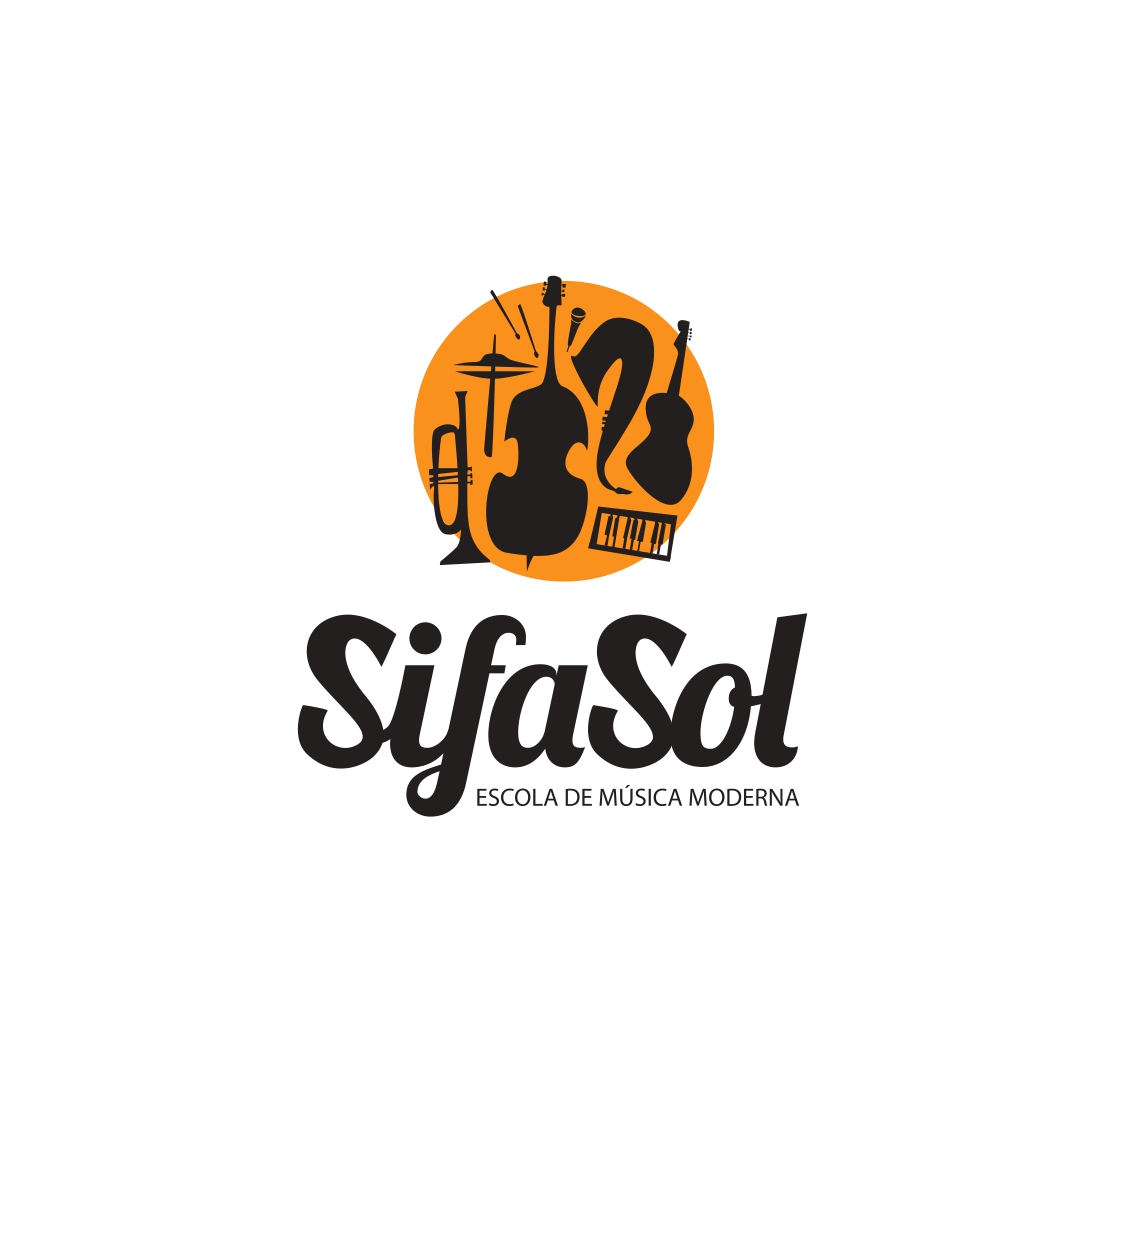 Asociación SiFaSol